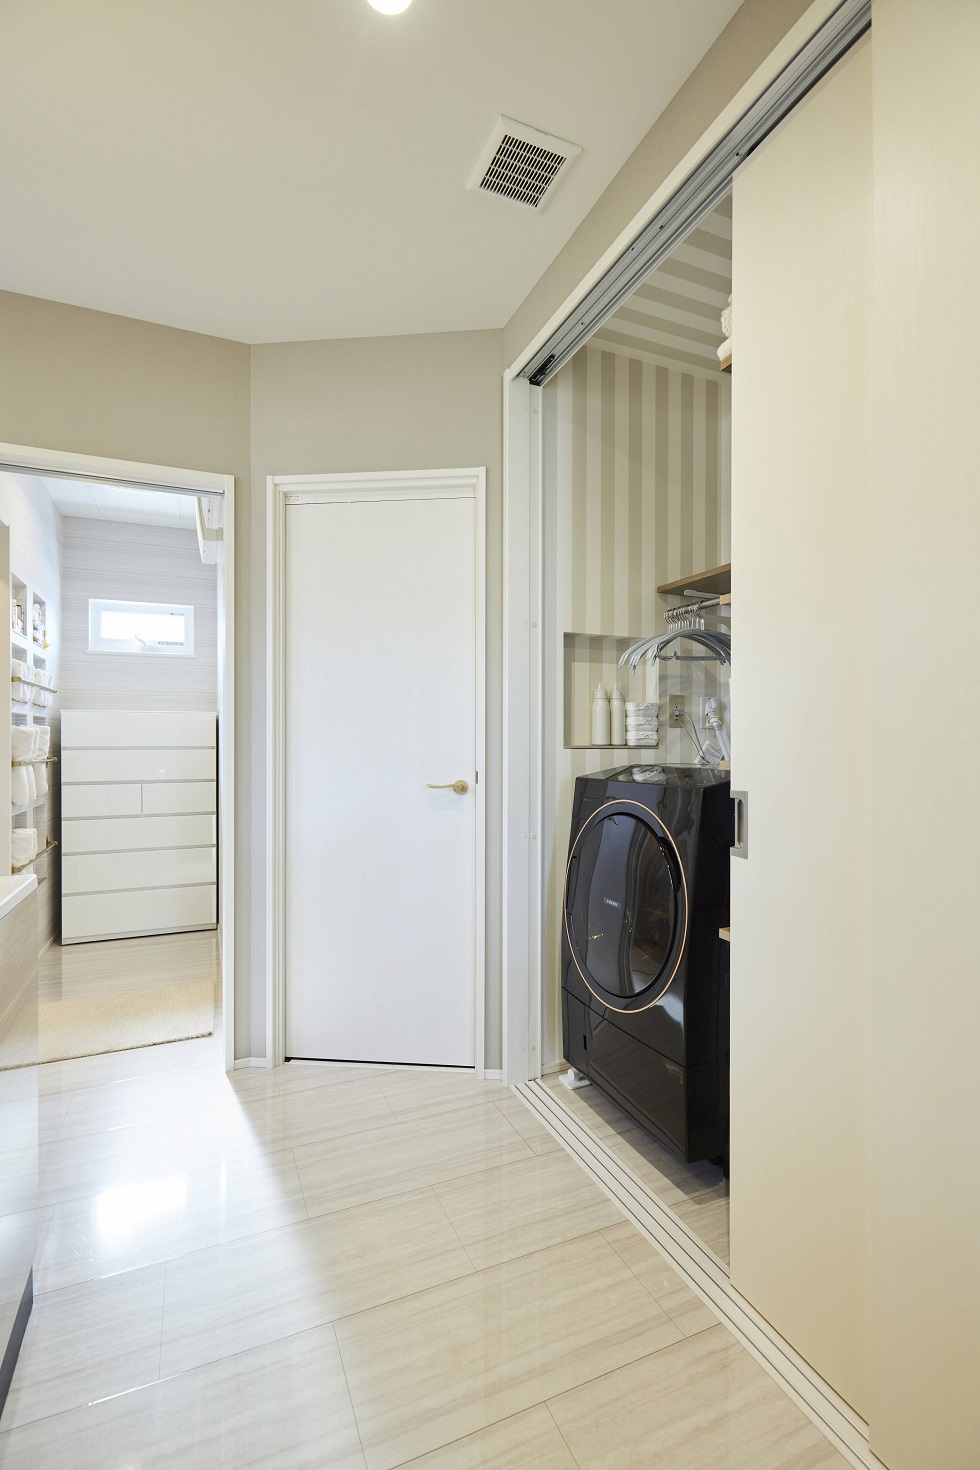 洗濯機はクローゼットと同じ扉の中にあるため、洗濯物の収納もスムーズです。また写真中央の扉はファミリークロークとなっており、身支度の移動が最短で完結できるこだわりの間取り。